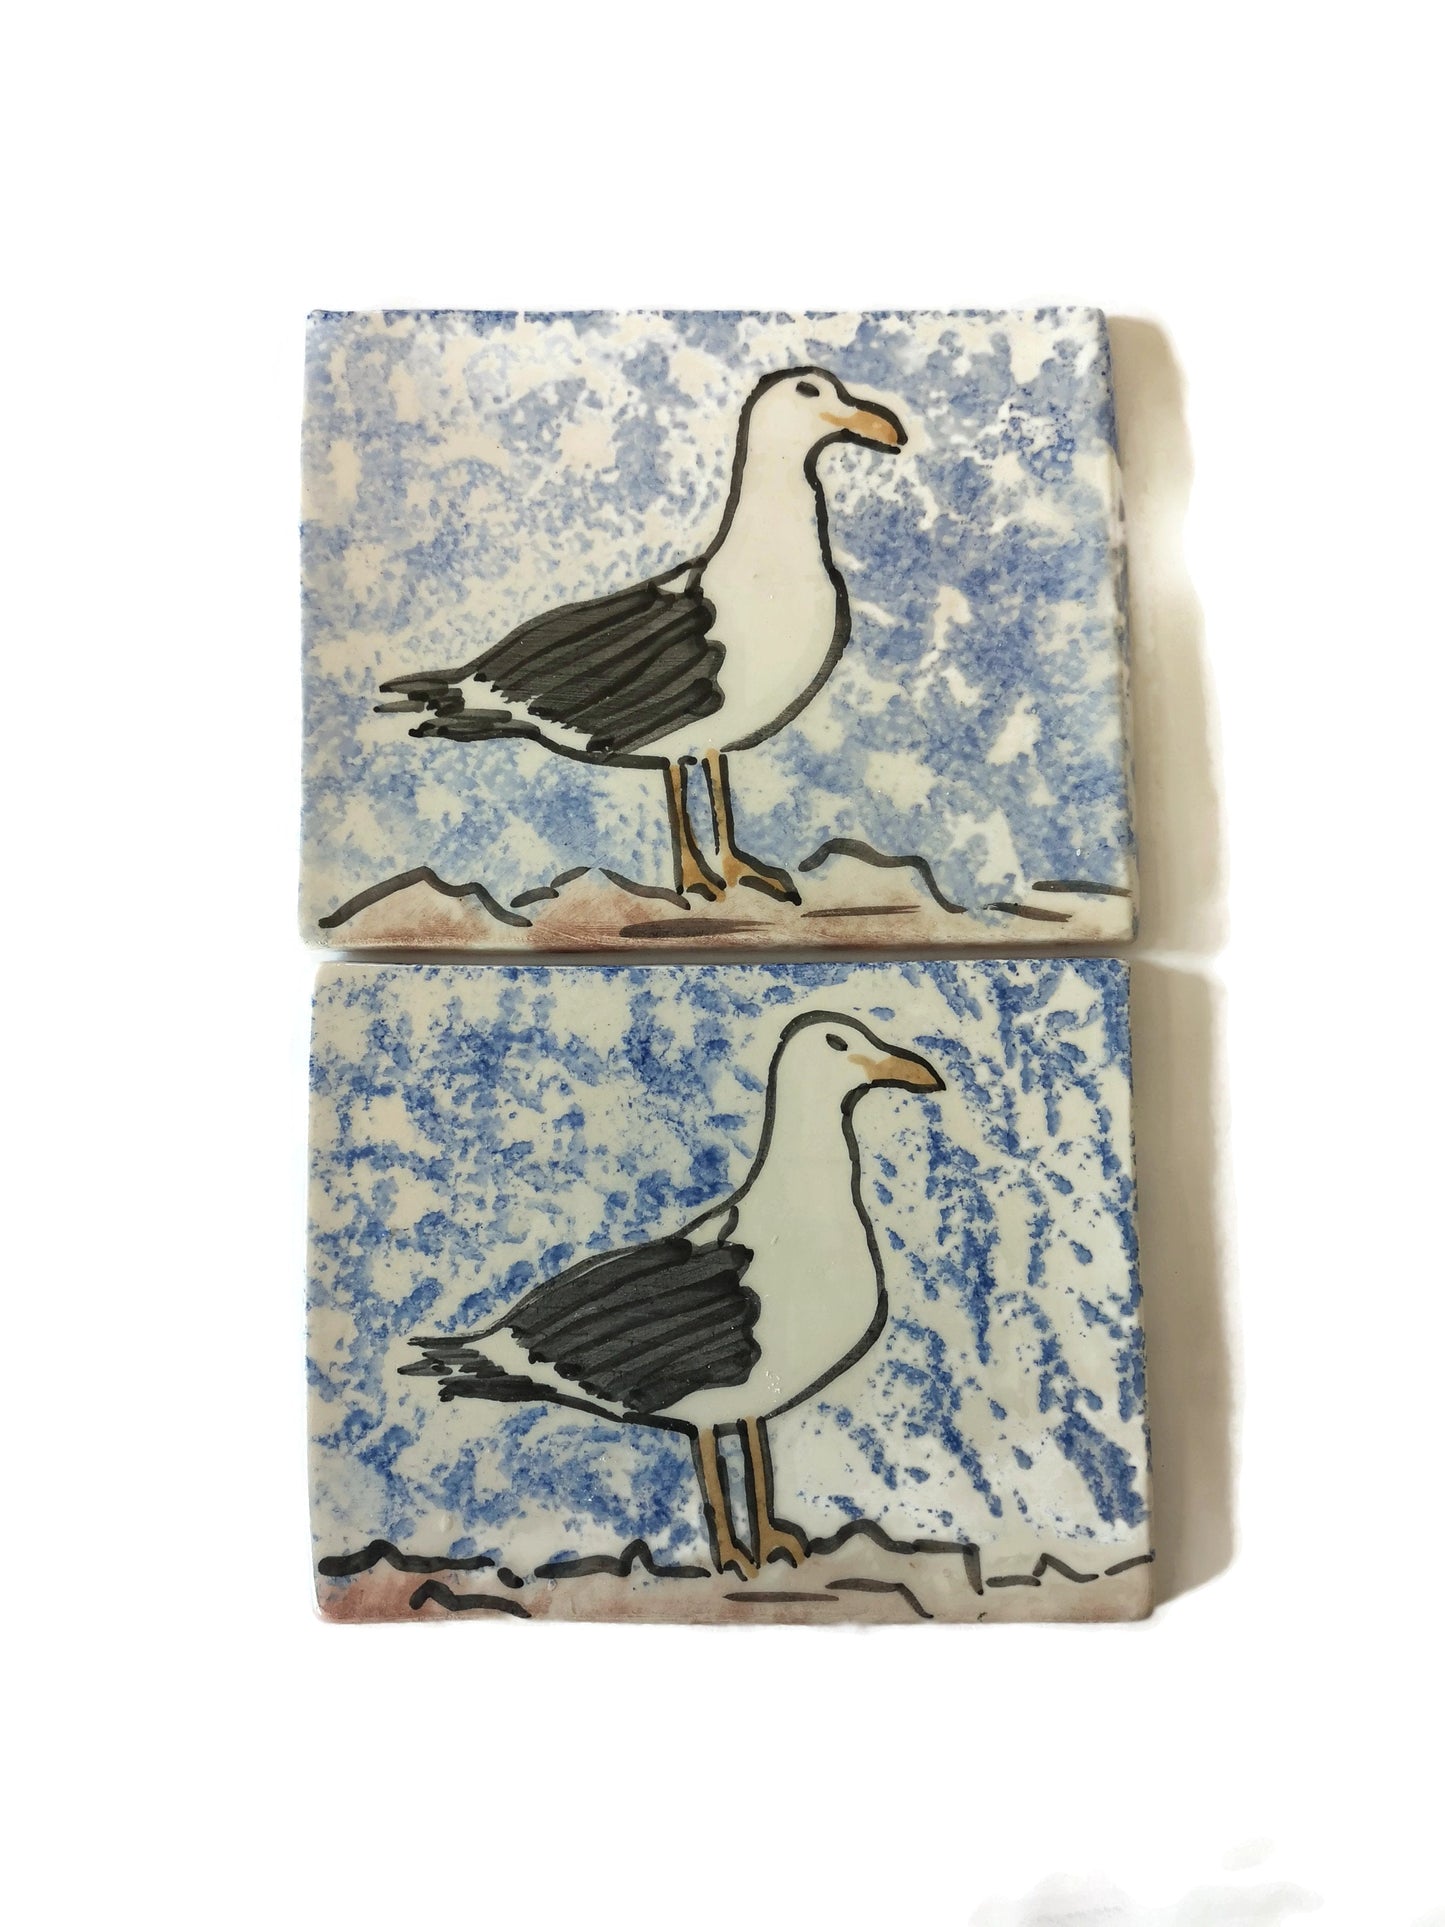 handmade ceramic bird tile, seagull wall decor, handpainted tiles for backsplash, bird lover gifts for men, Best Gifts For Him - Ceramica Ana Rafael